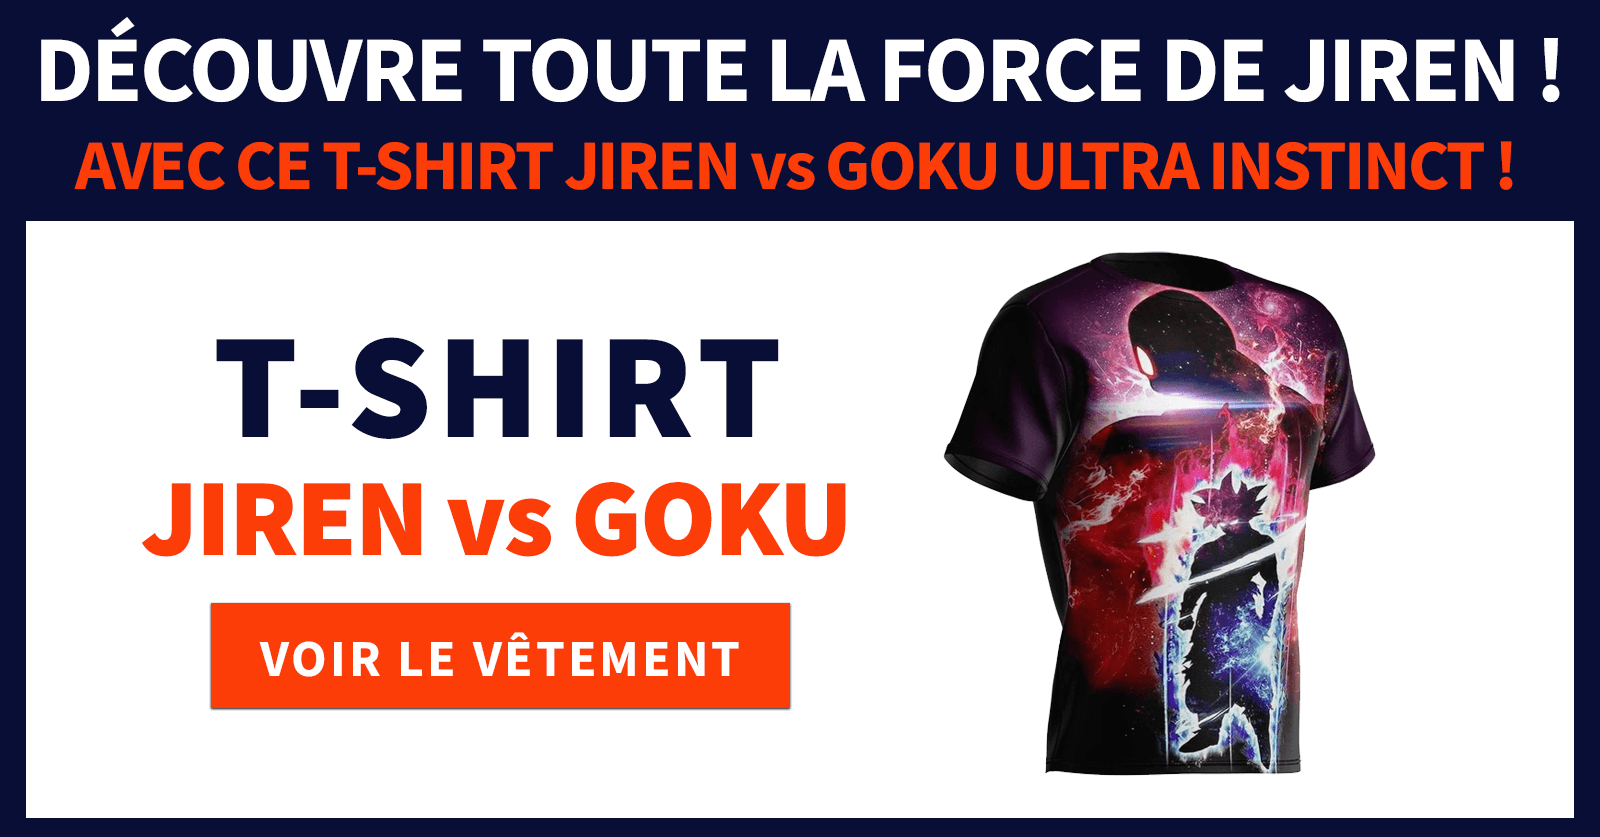 Goku vs. Jiren T-Shirt